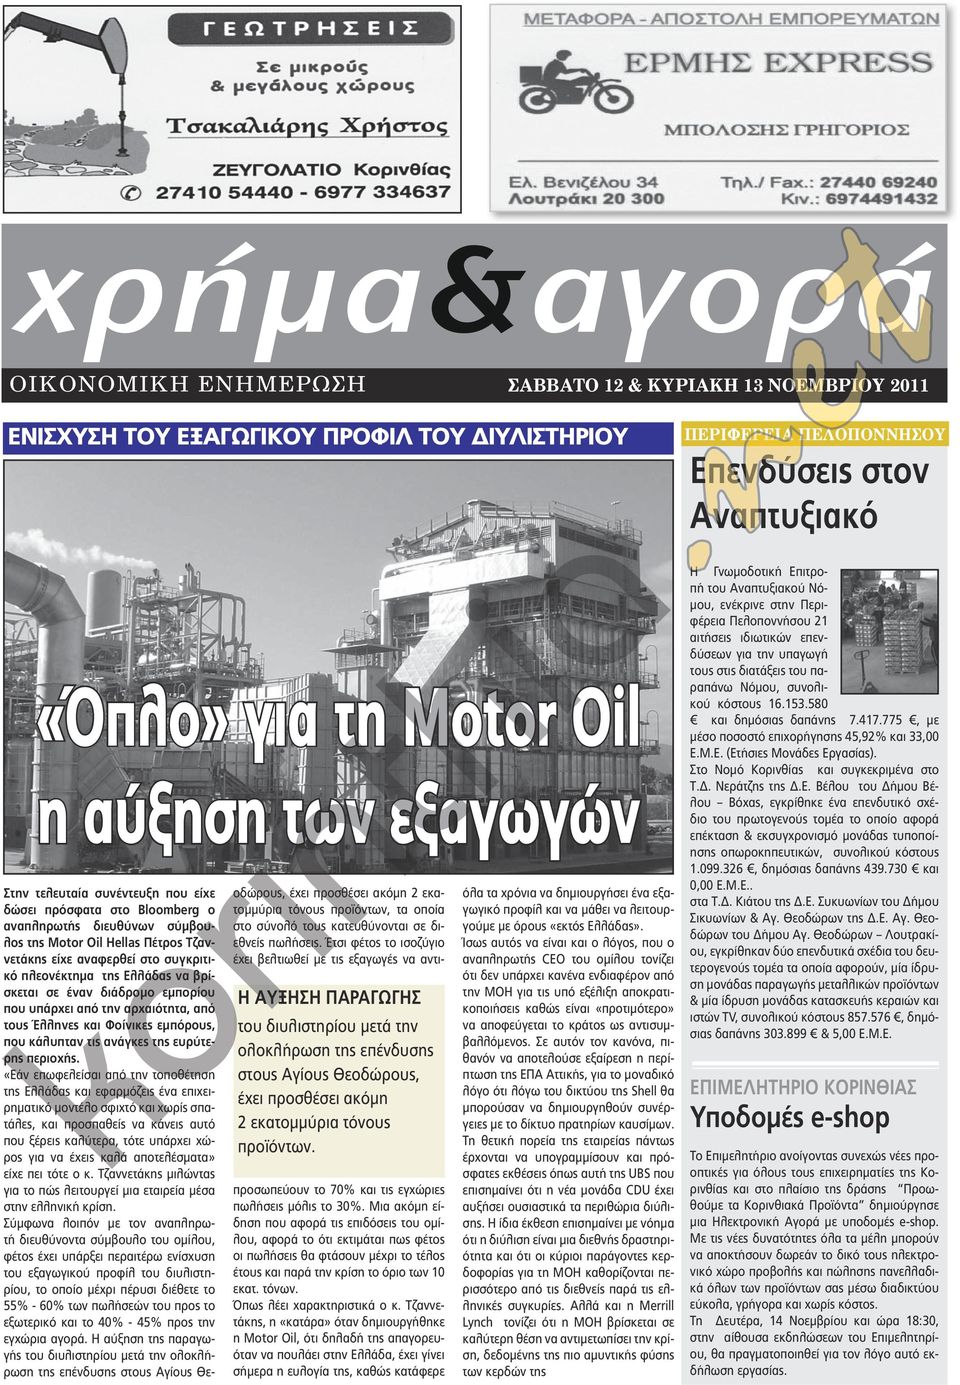 Στην τελευταία συνέντευξη που είχε δώσει πρόσφατα στο Bloomberg ο αναπληρωτής διευθύνων σύμβουλος της Moor Oil Hellas Πέτρος Τζαννετάκης είχε αναφερθεί στο συγκριτικό πλεονέκτημα της Ελλάδας να